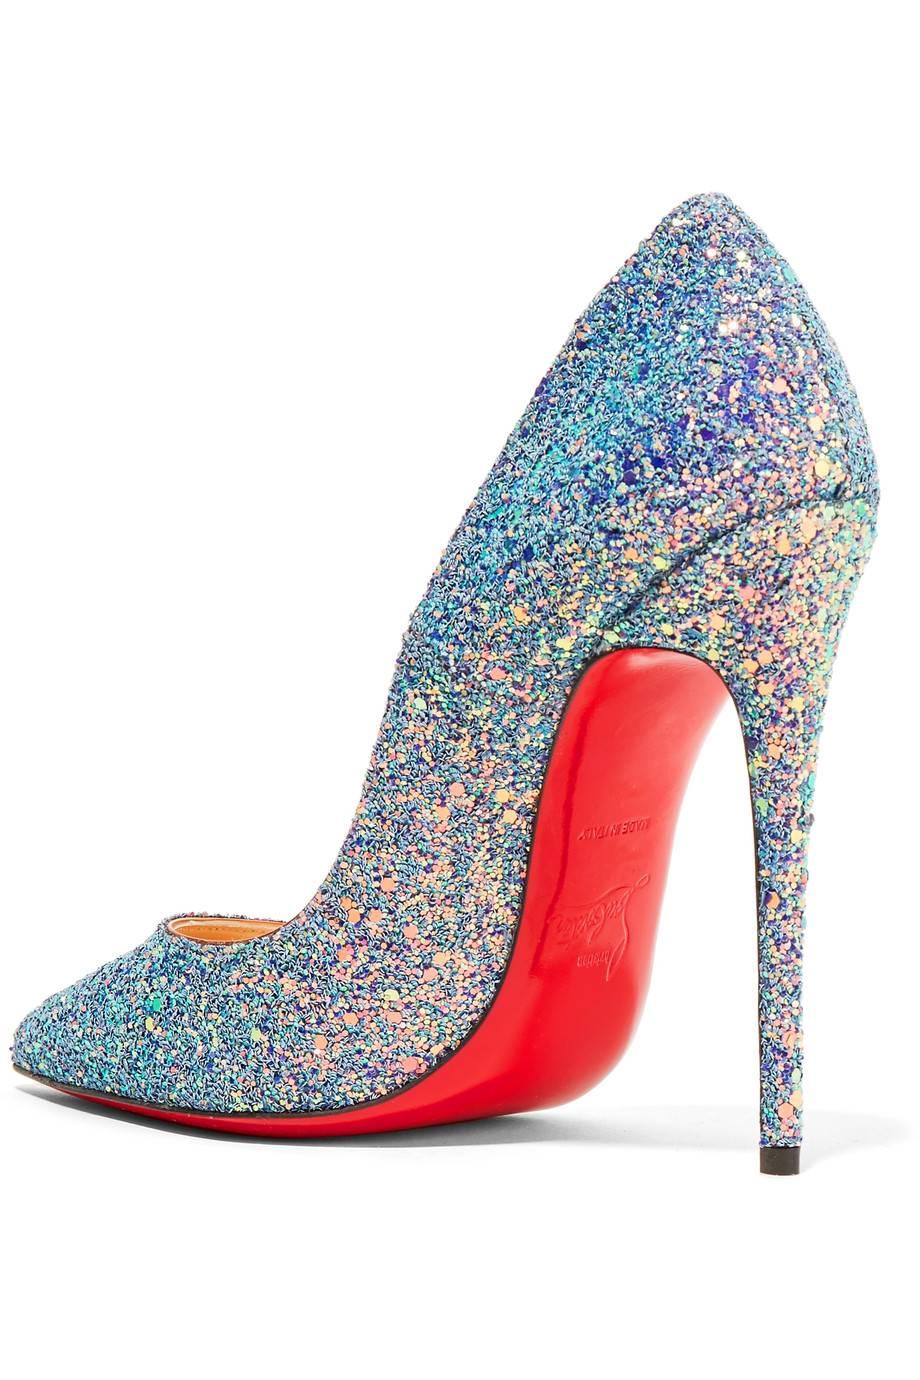 pink glitter high heels